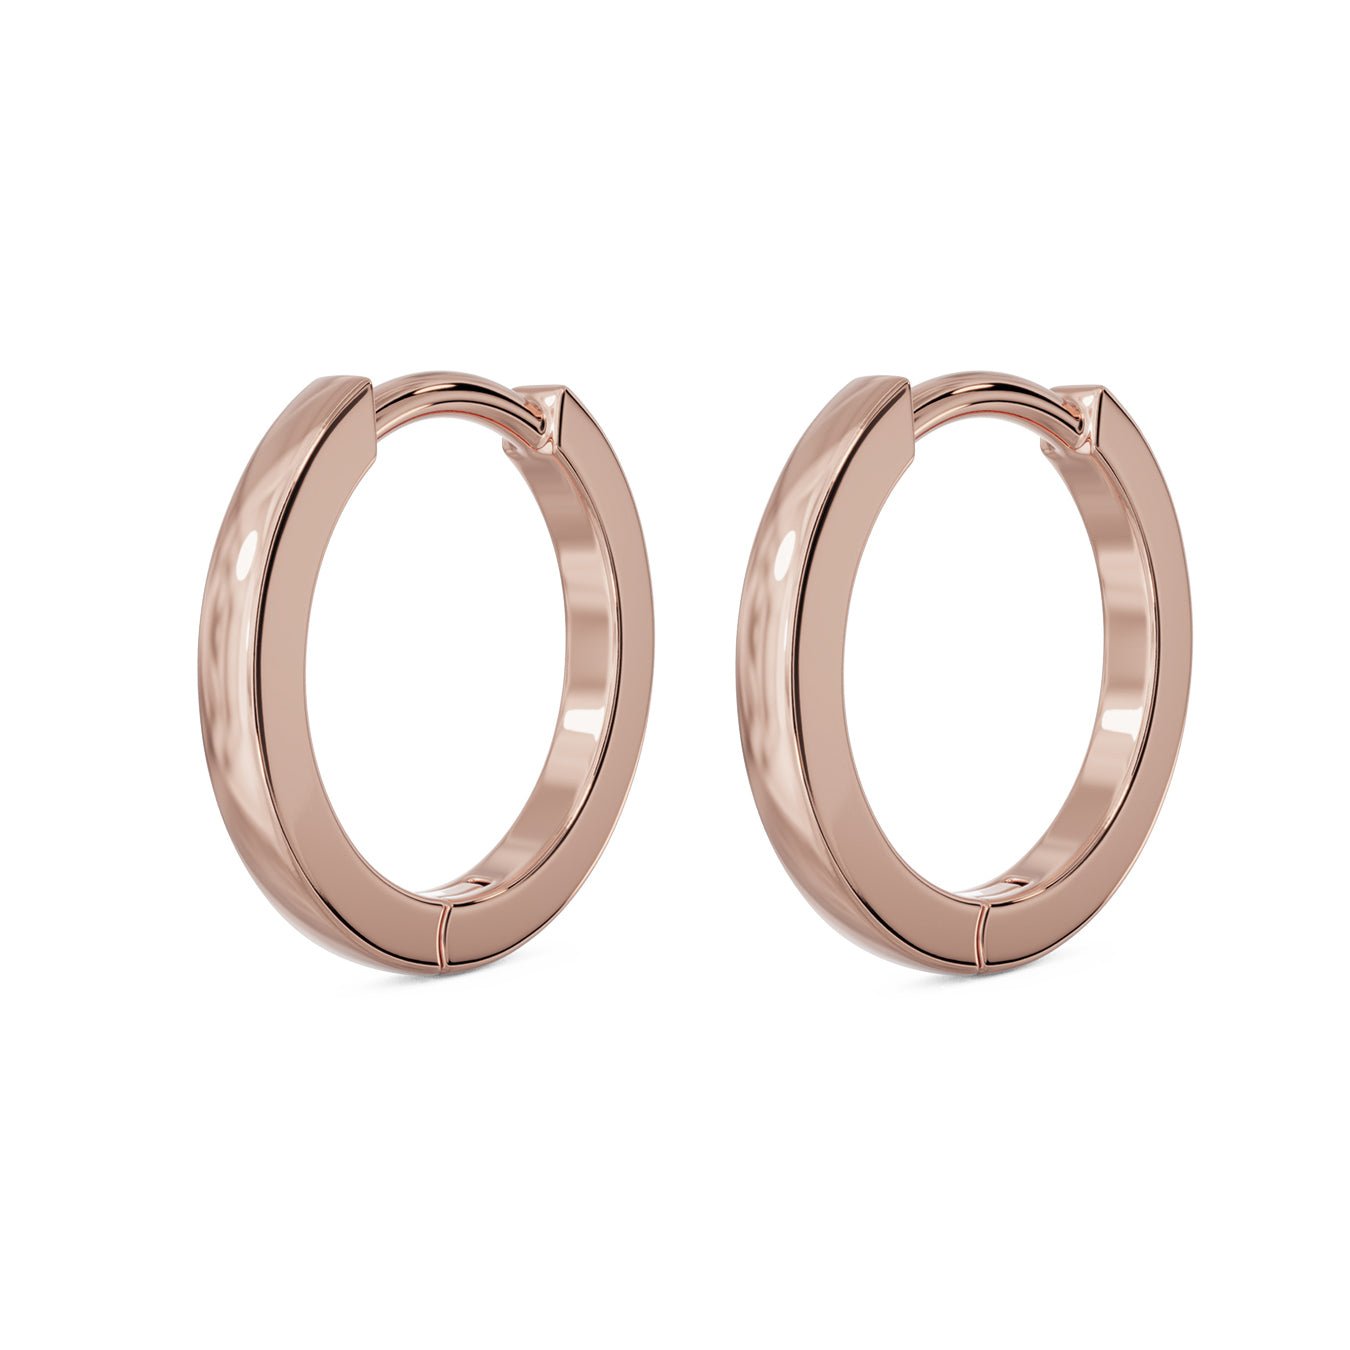 10mm Solid Gold Huggie Hoop Earrings